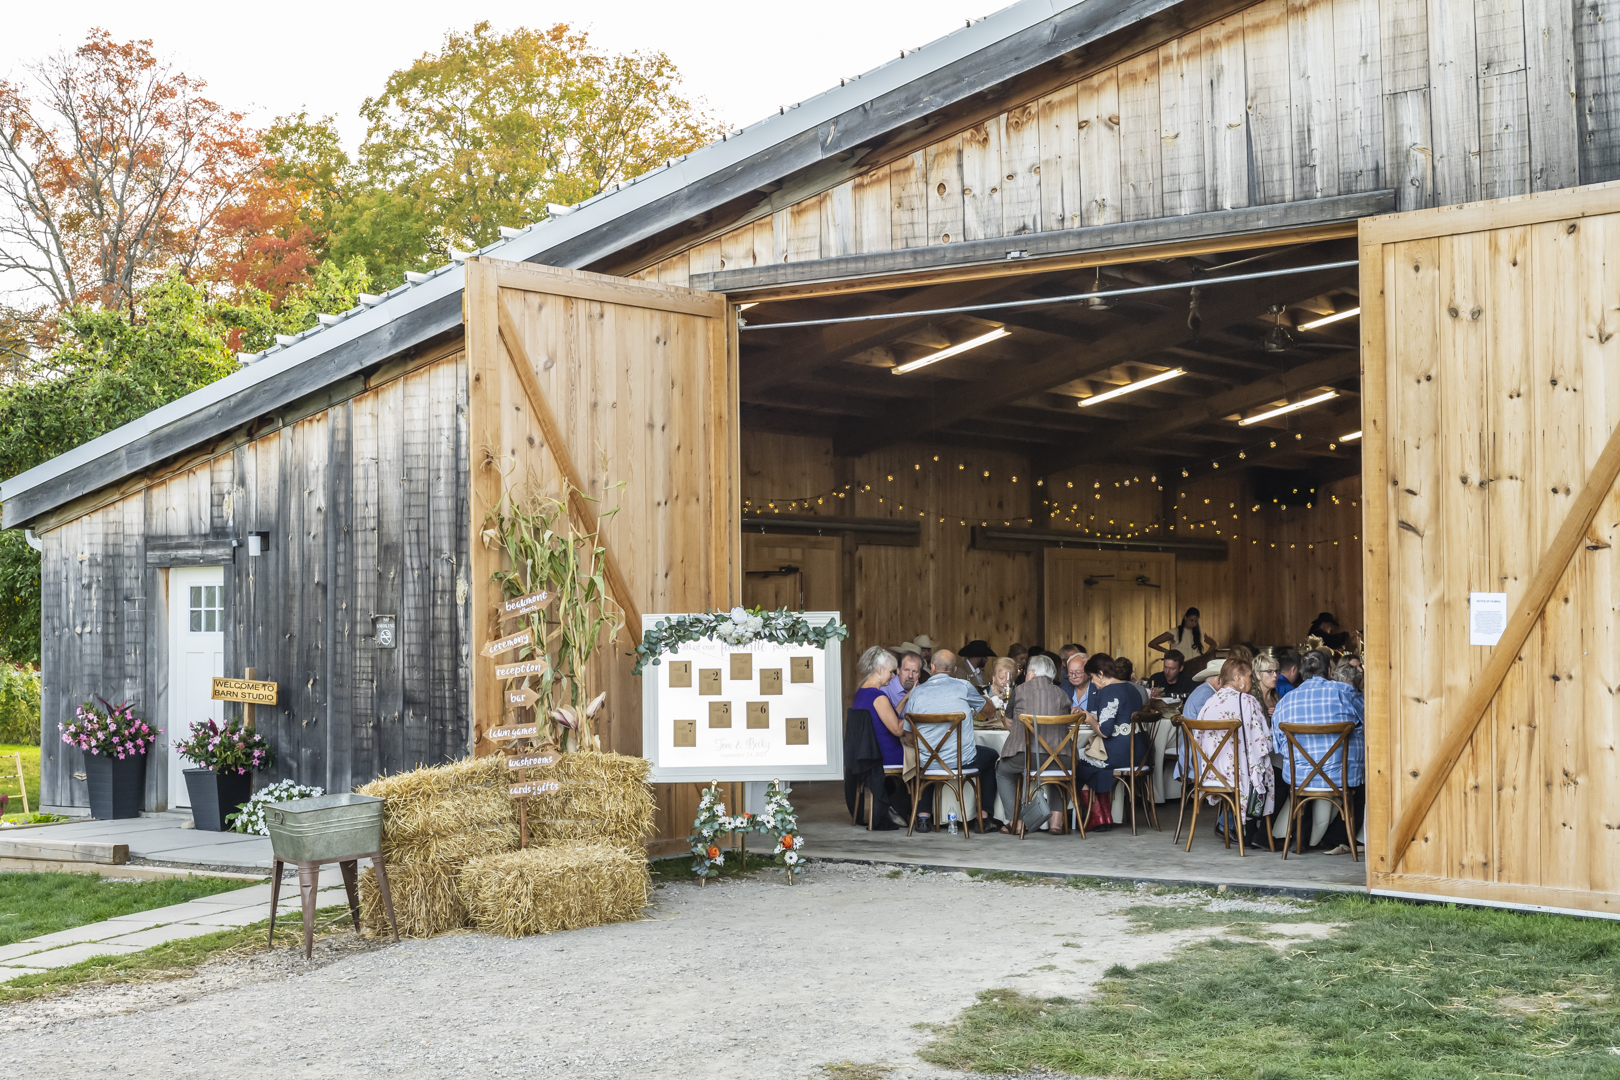 Wedding reception in the barn